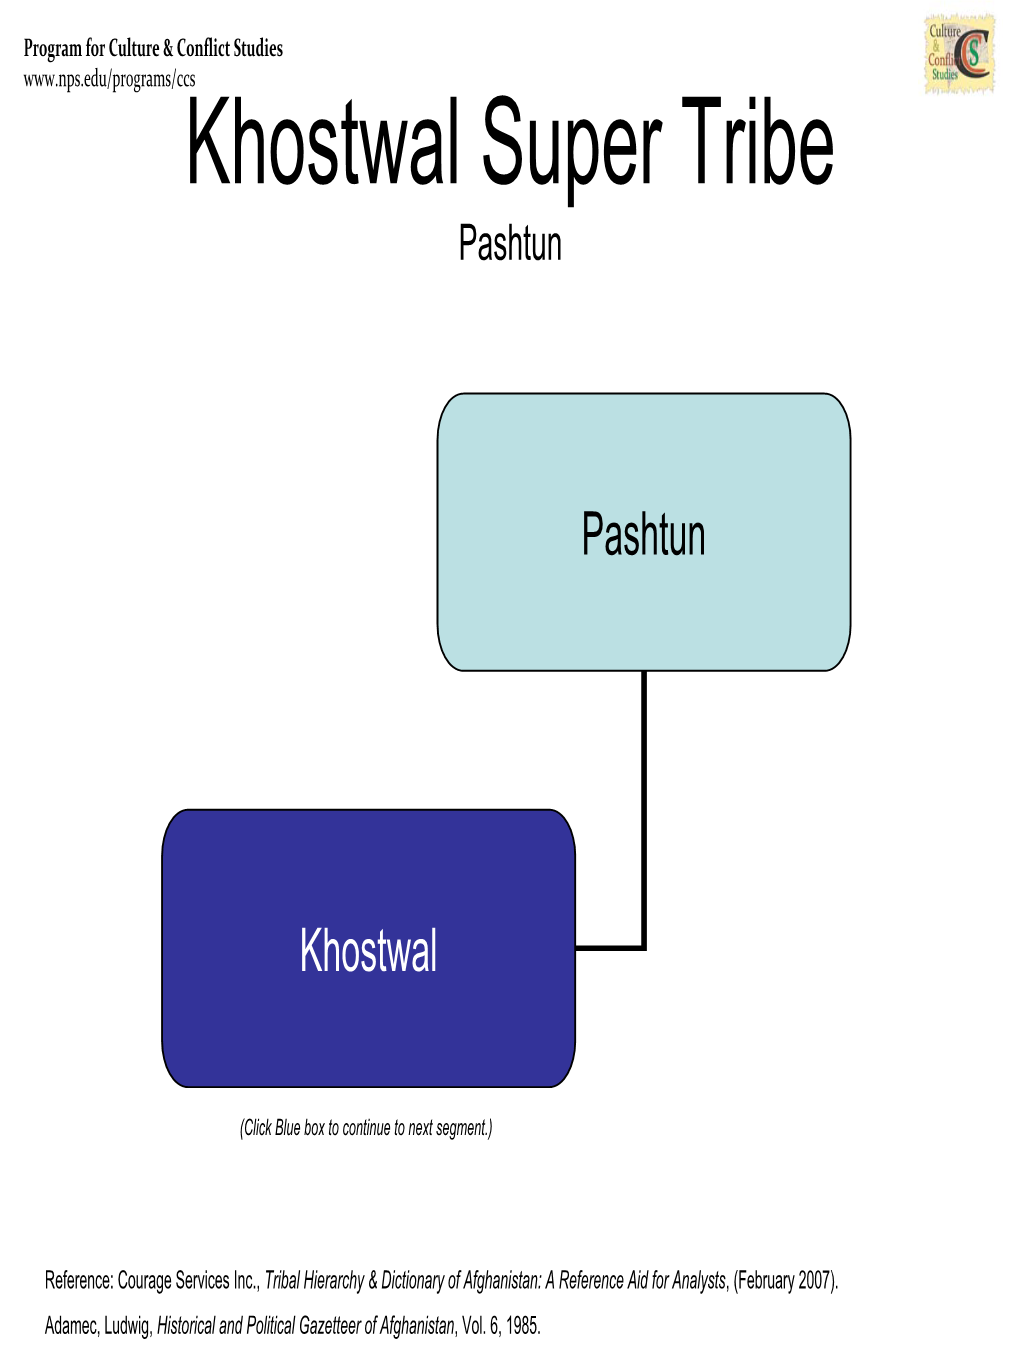 Kakar Super Tribe Descendant of Pashtun